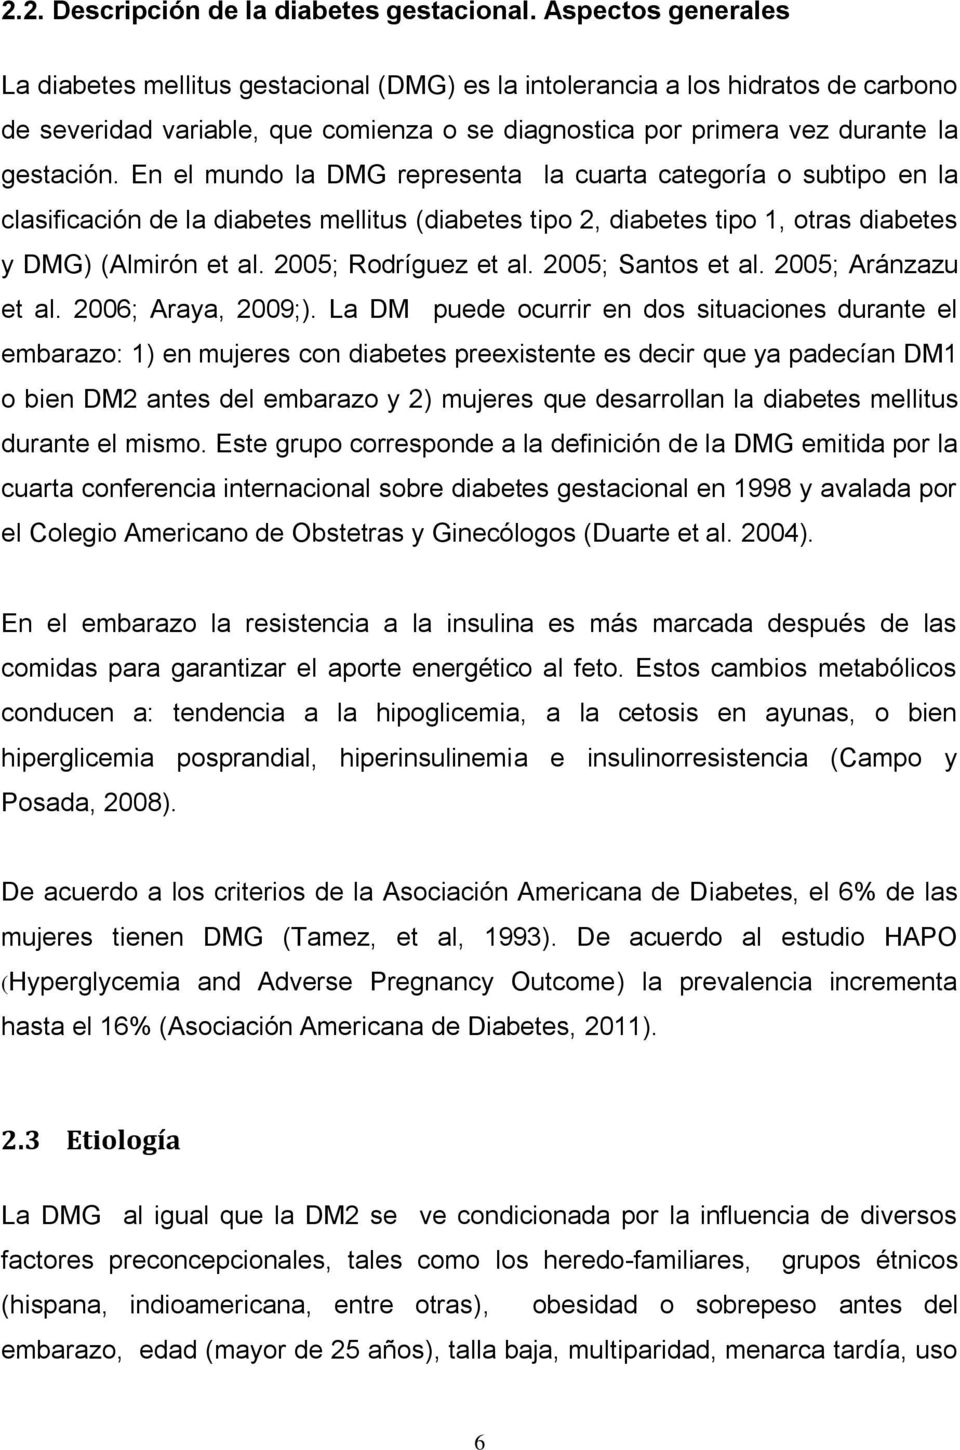 En el mundo la DMG representa la cuarta categoría o subtipo en la clasificación de la diabetes mellitus (diabetes tipo 2, diabetes tipo 1, otras diabetes y DMG) (Almirón et al. 2005; Rodríguez et al.